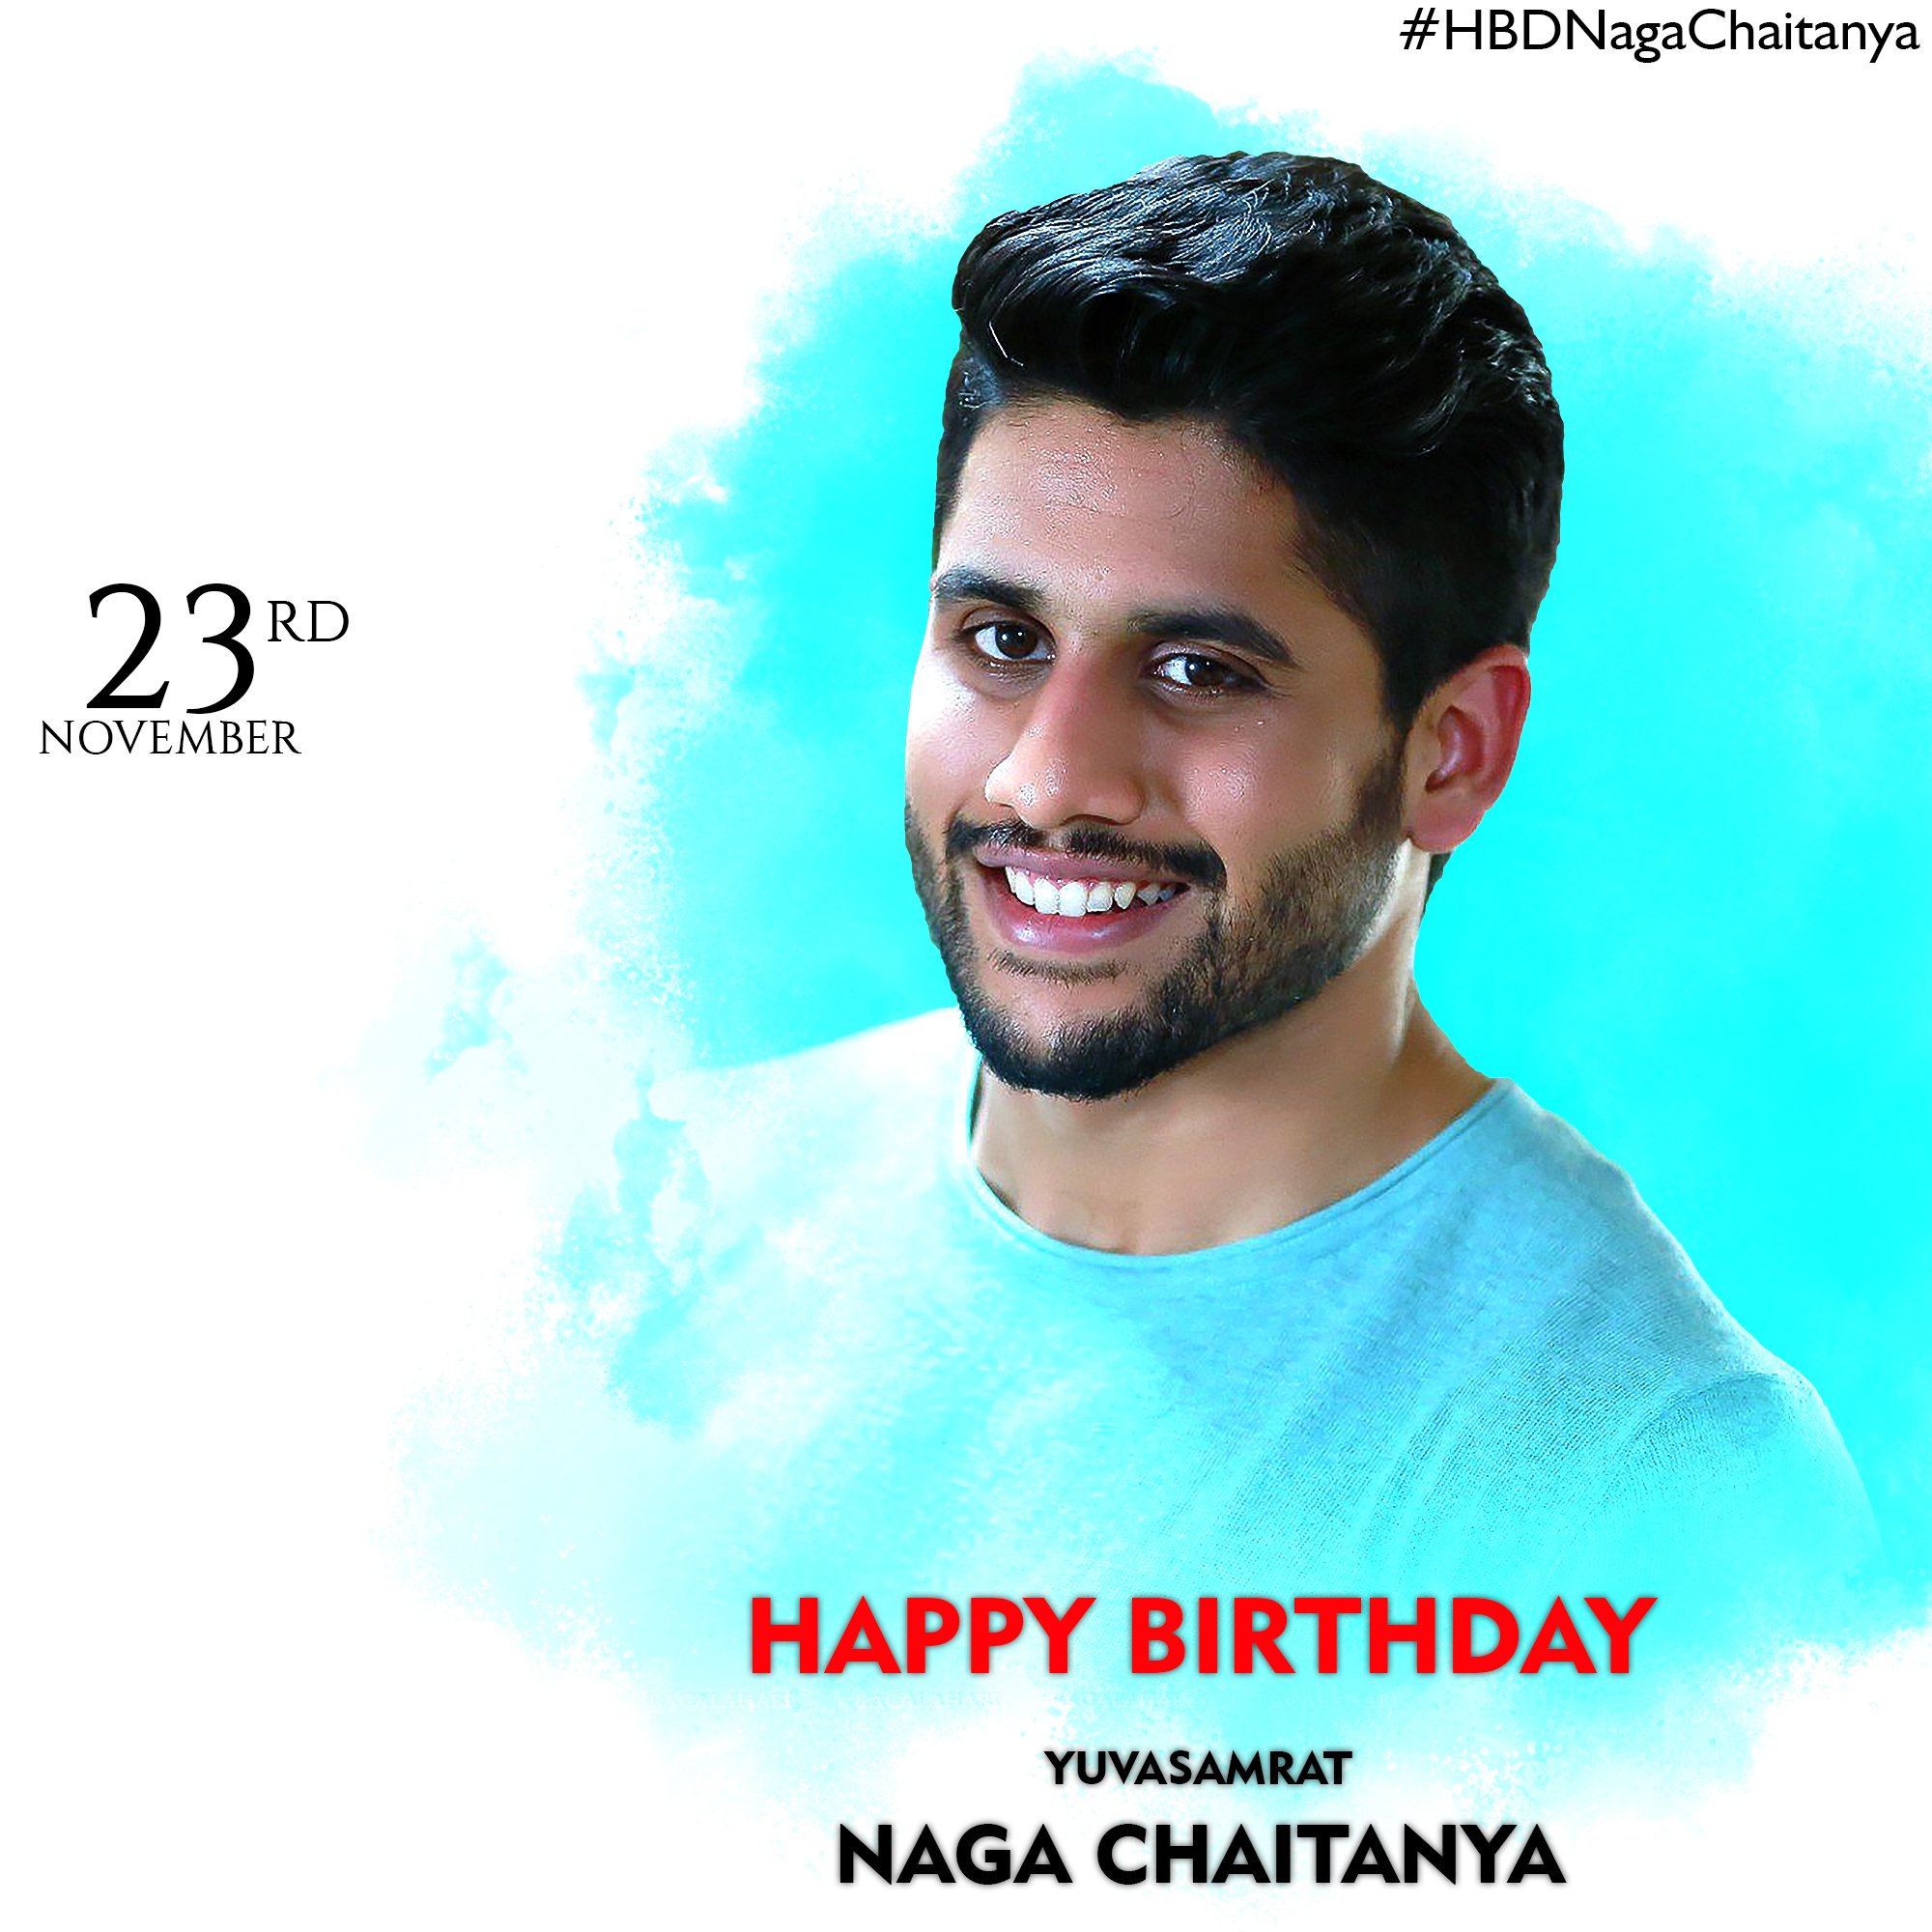 Happy birthday to you naga Chaitanya  